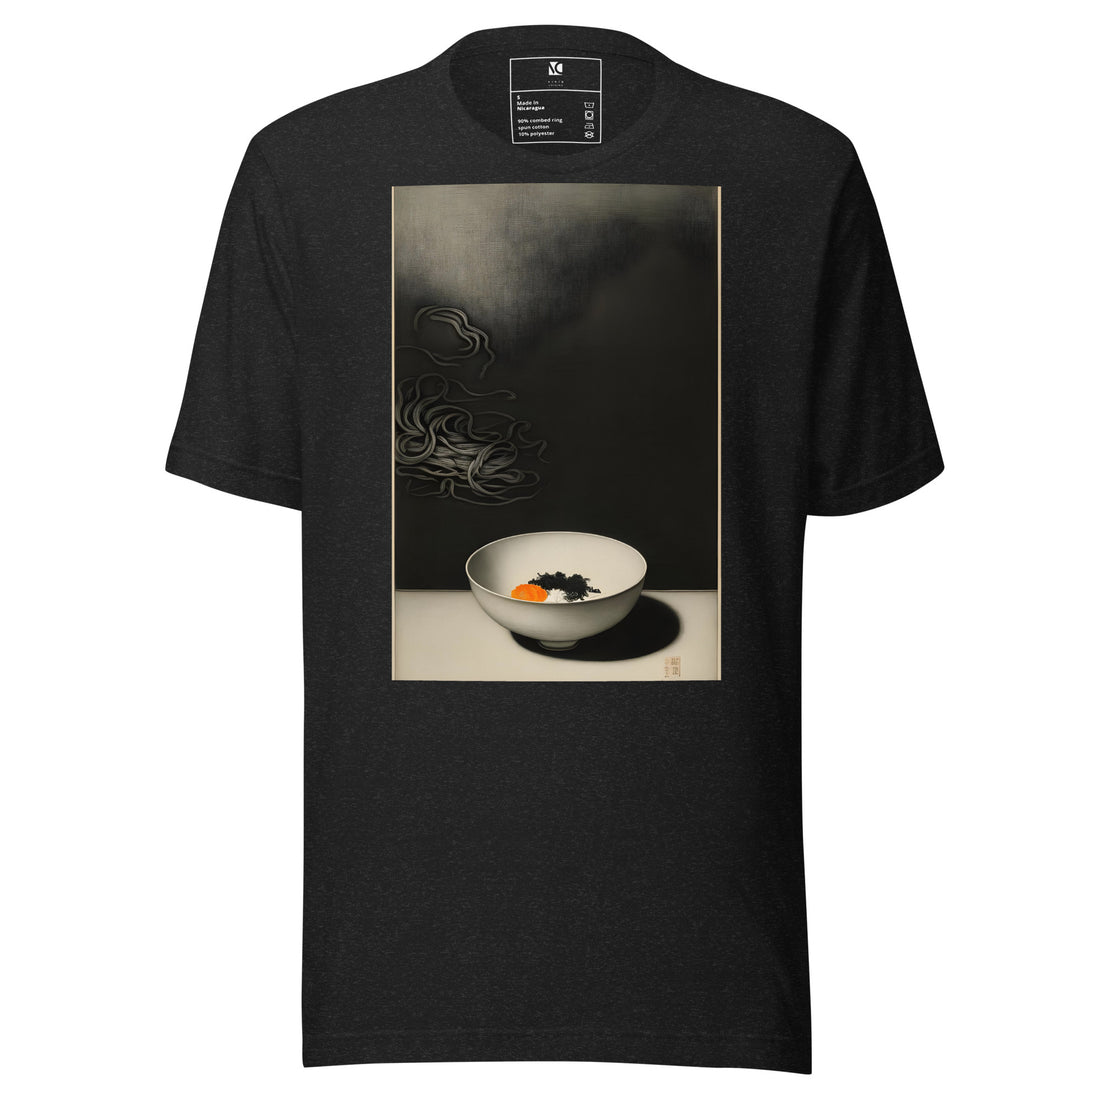 Ramen Storm - Unisex T-Shirt